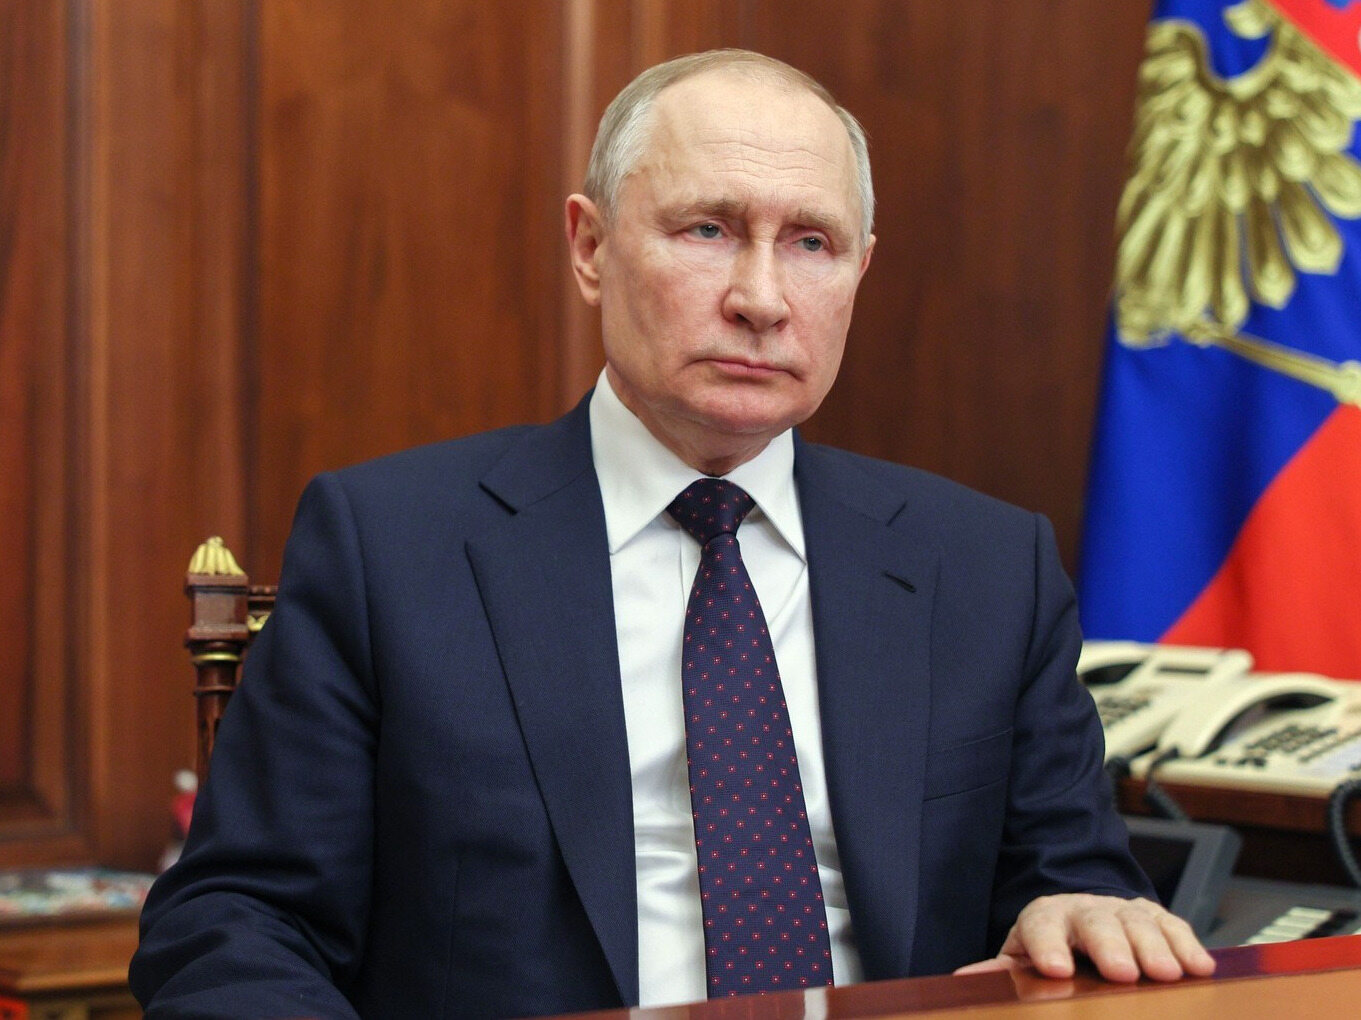 Wyciek tajnych dokumentów ujawnił coś jeszcze: Putin ma przyjmować chemioterapię